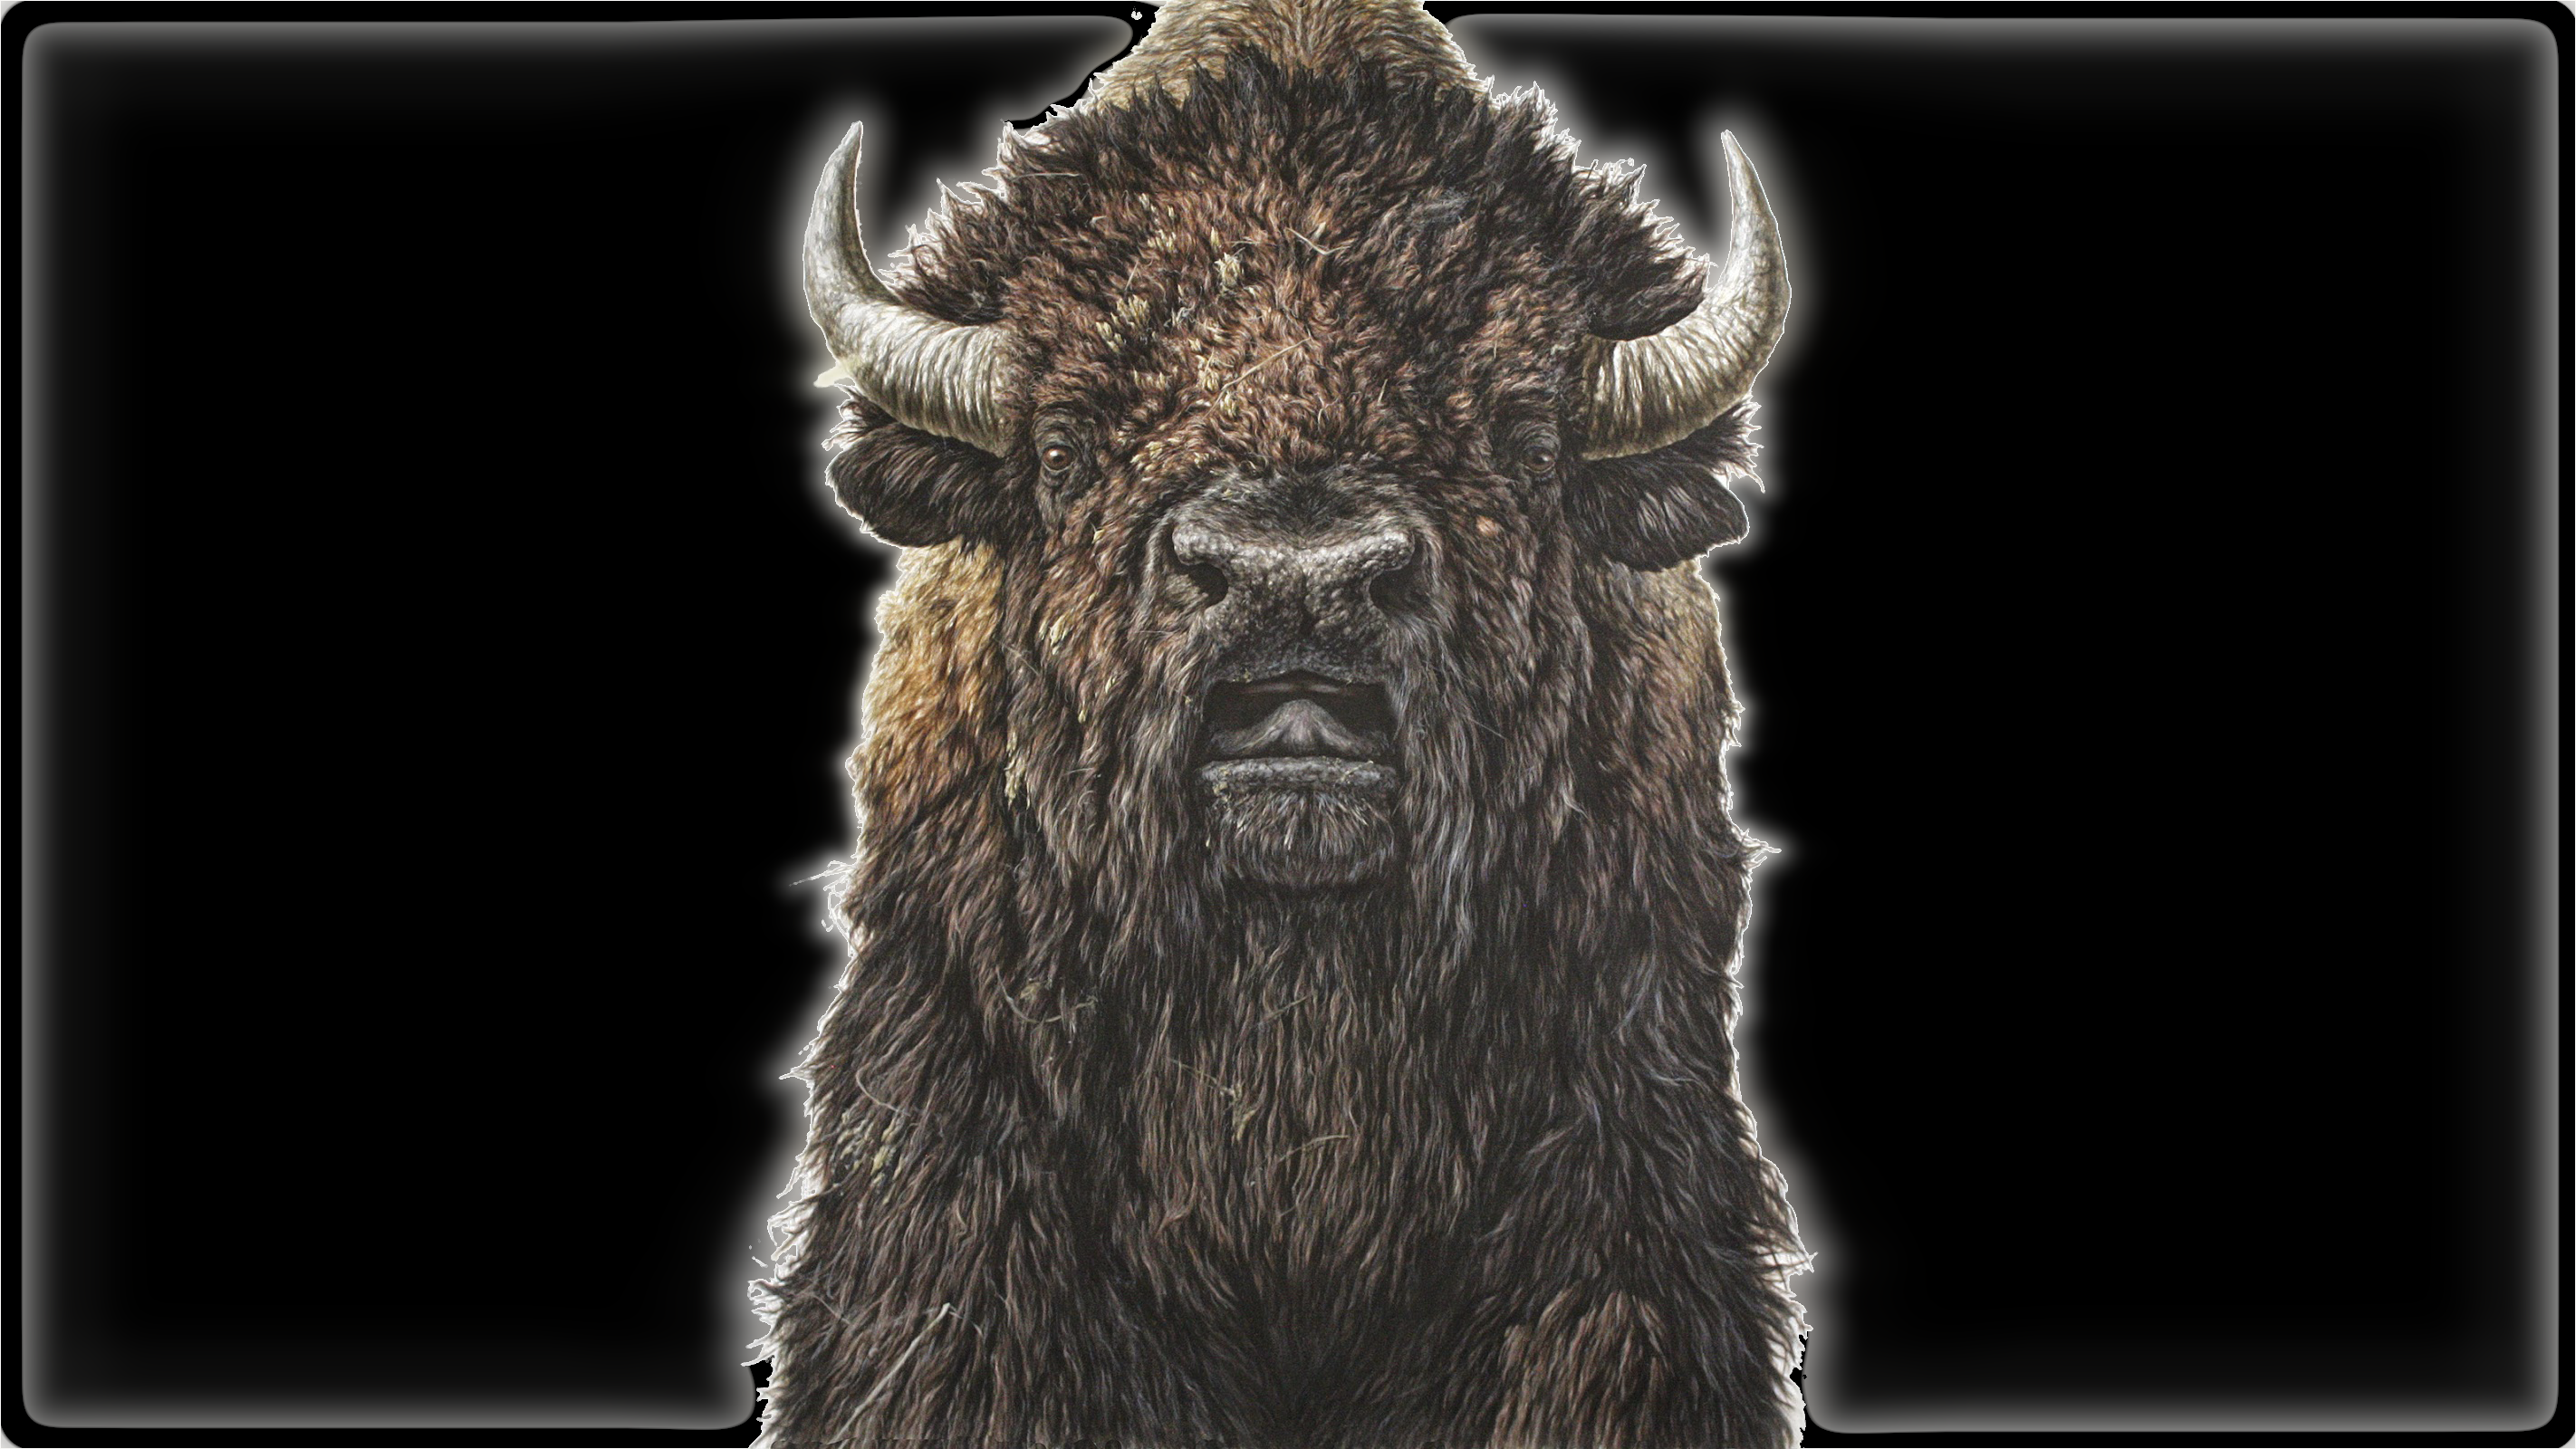 Bison Black Background Animals Mammals Artwork Horns Wallpaper -  Resolution:2844x1600 - ID:1278119 